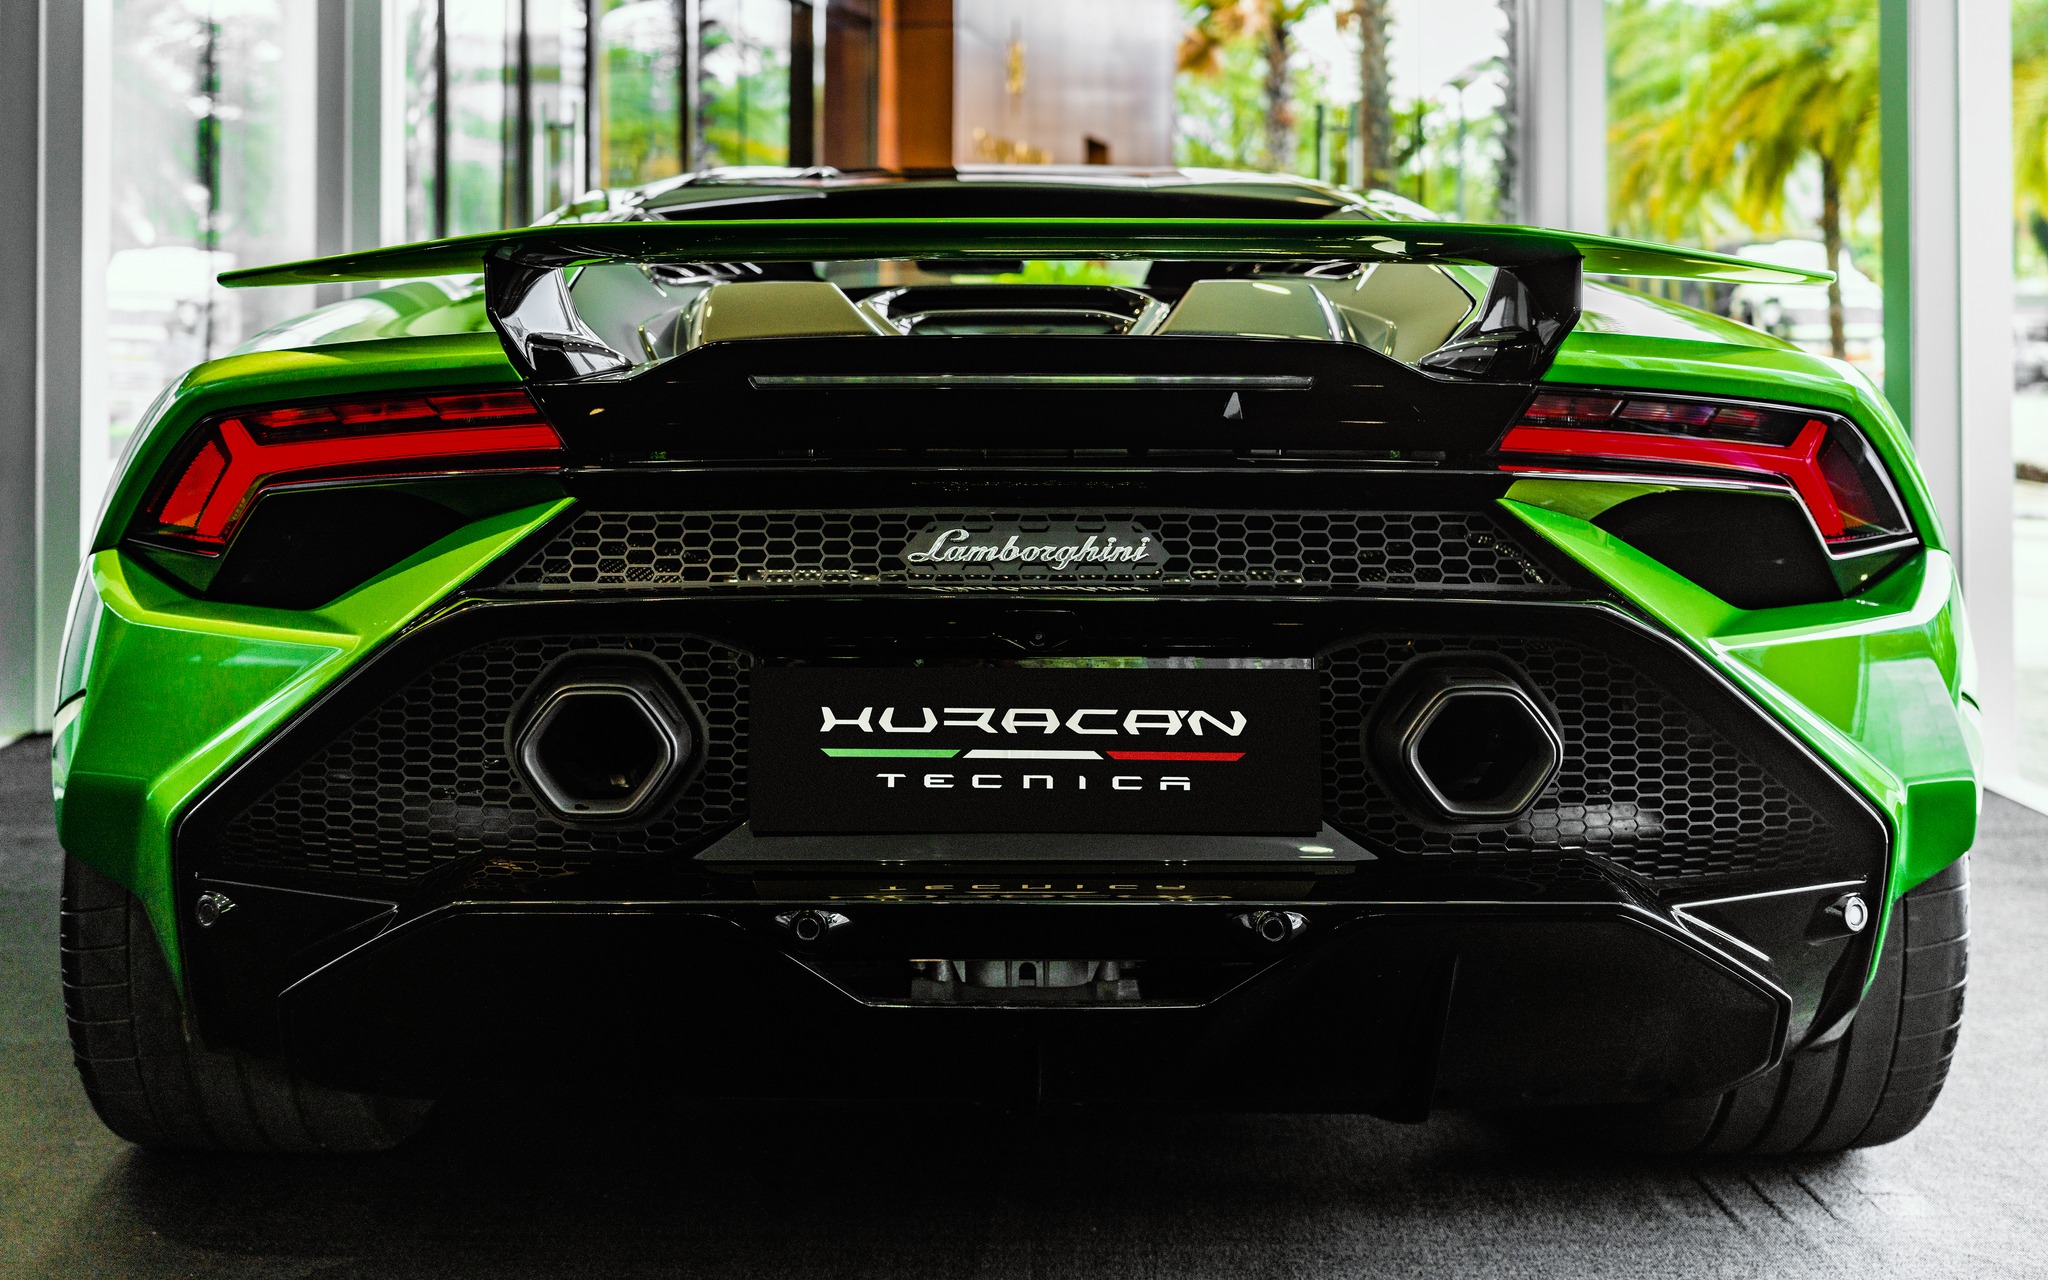 在 Grand Marina, Gallery 欣赏品牌和超级跑车 Lamborghini Huracan Tecnica 的二重奏